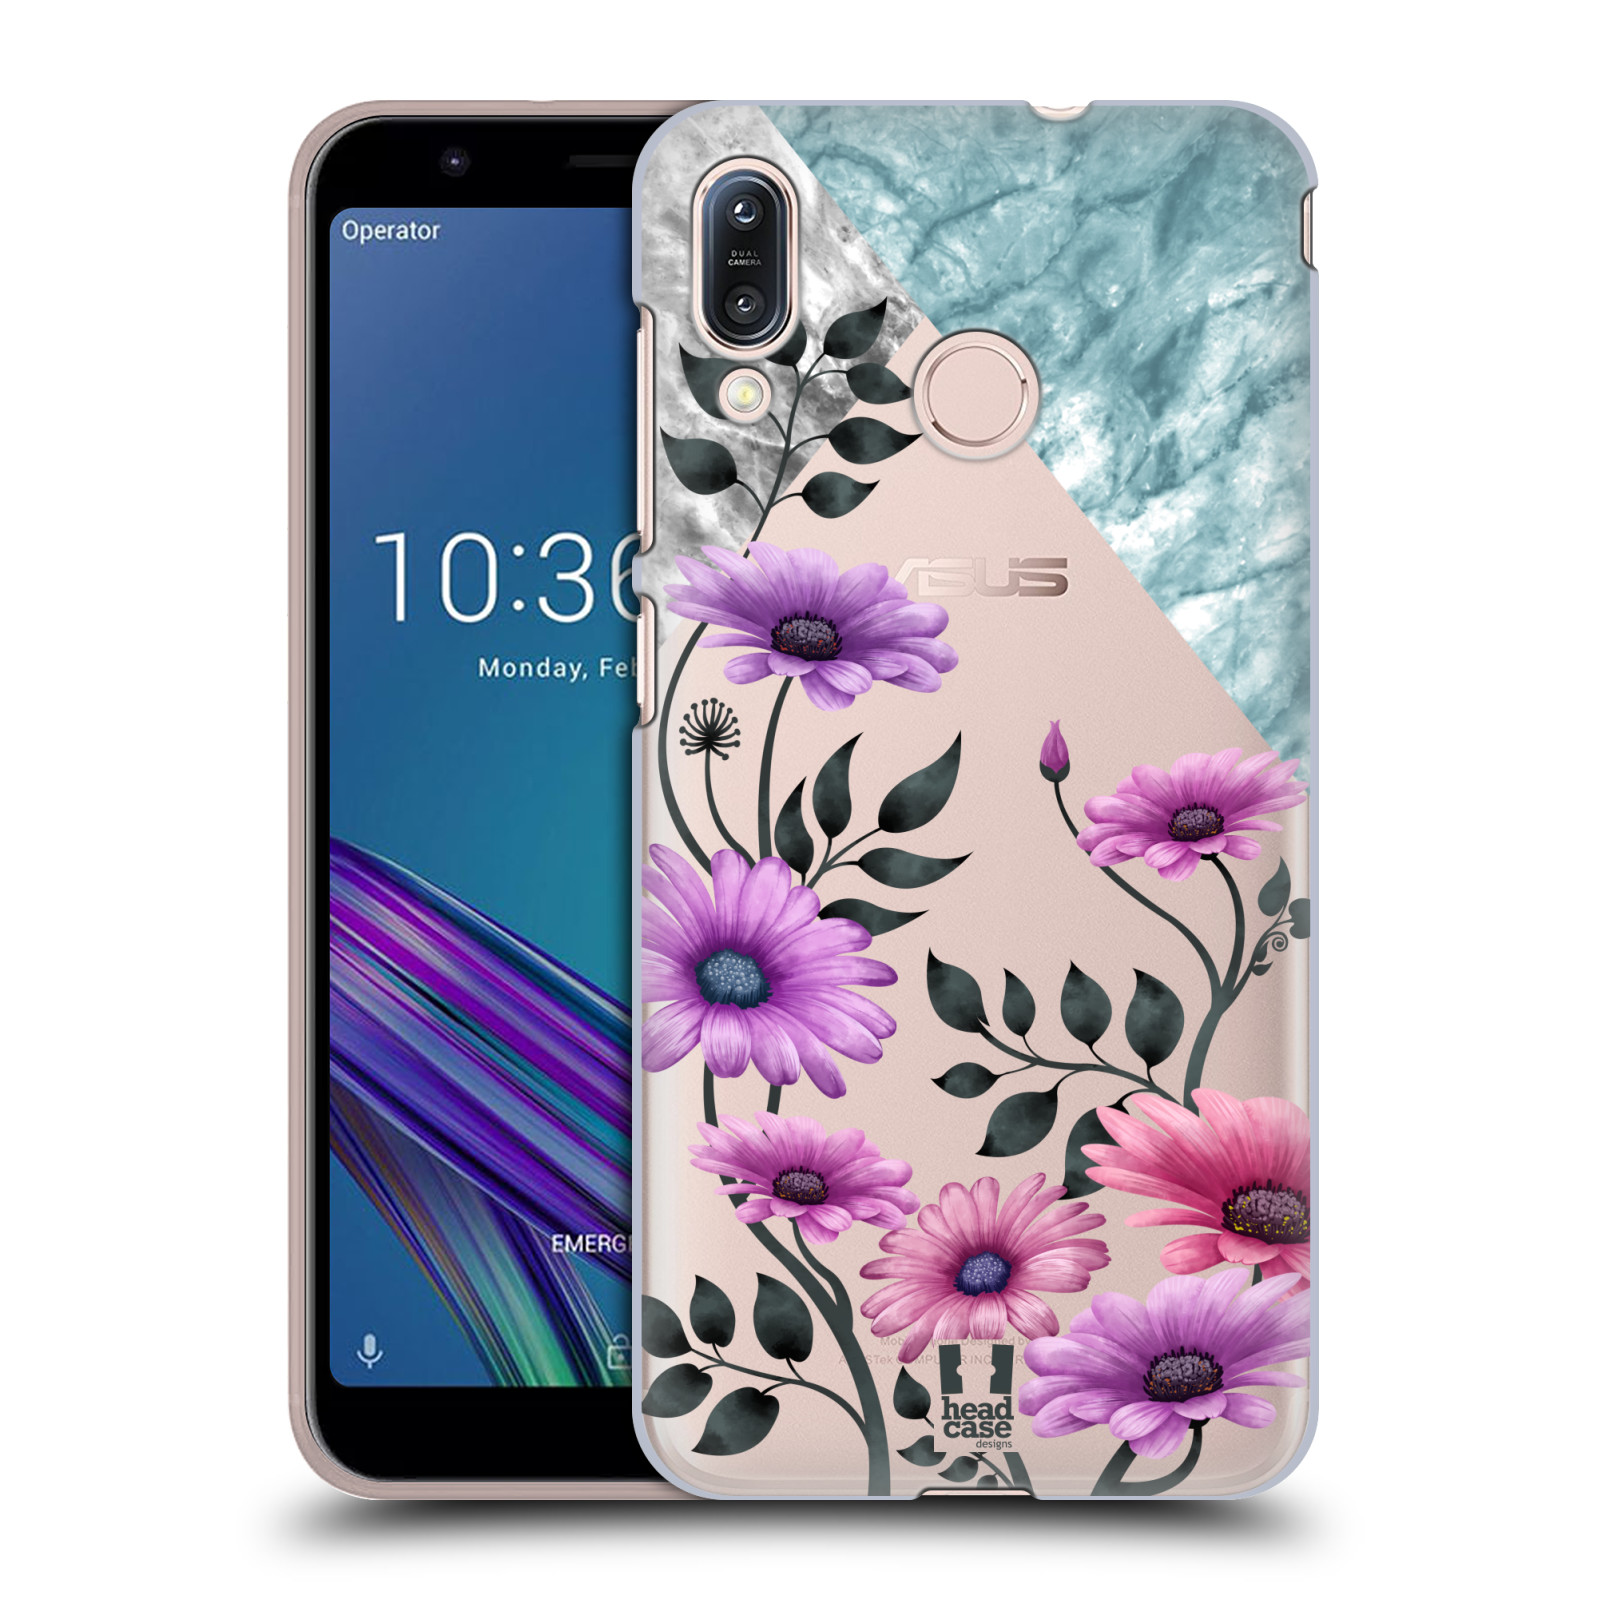 Pouzdro na mobil Asus Zenfone Max M1 (ZB555KL) - HEAD CASE - květiny hvězdnice, Aster fialová a modrá